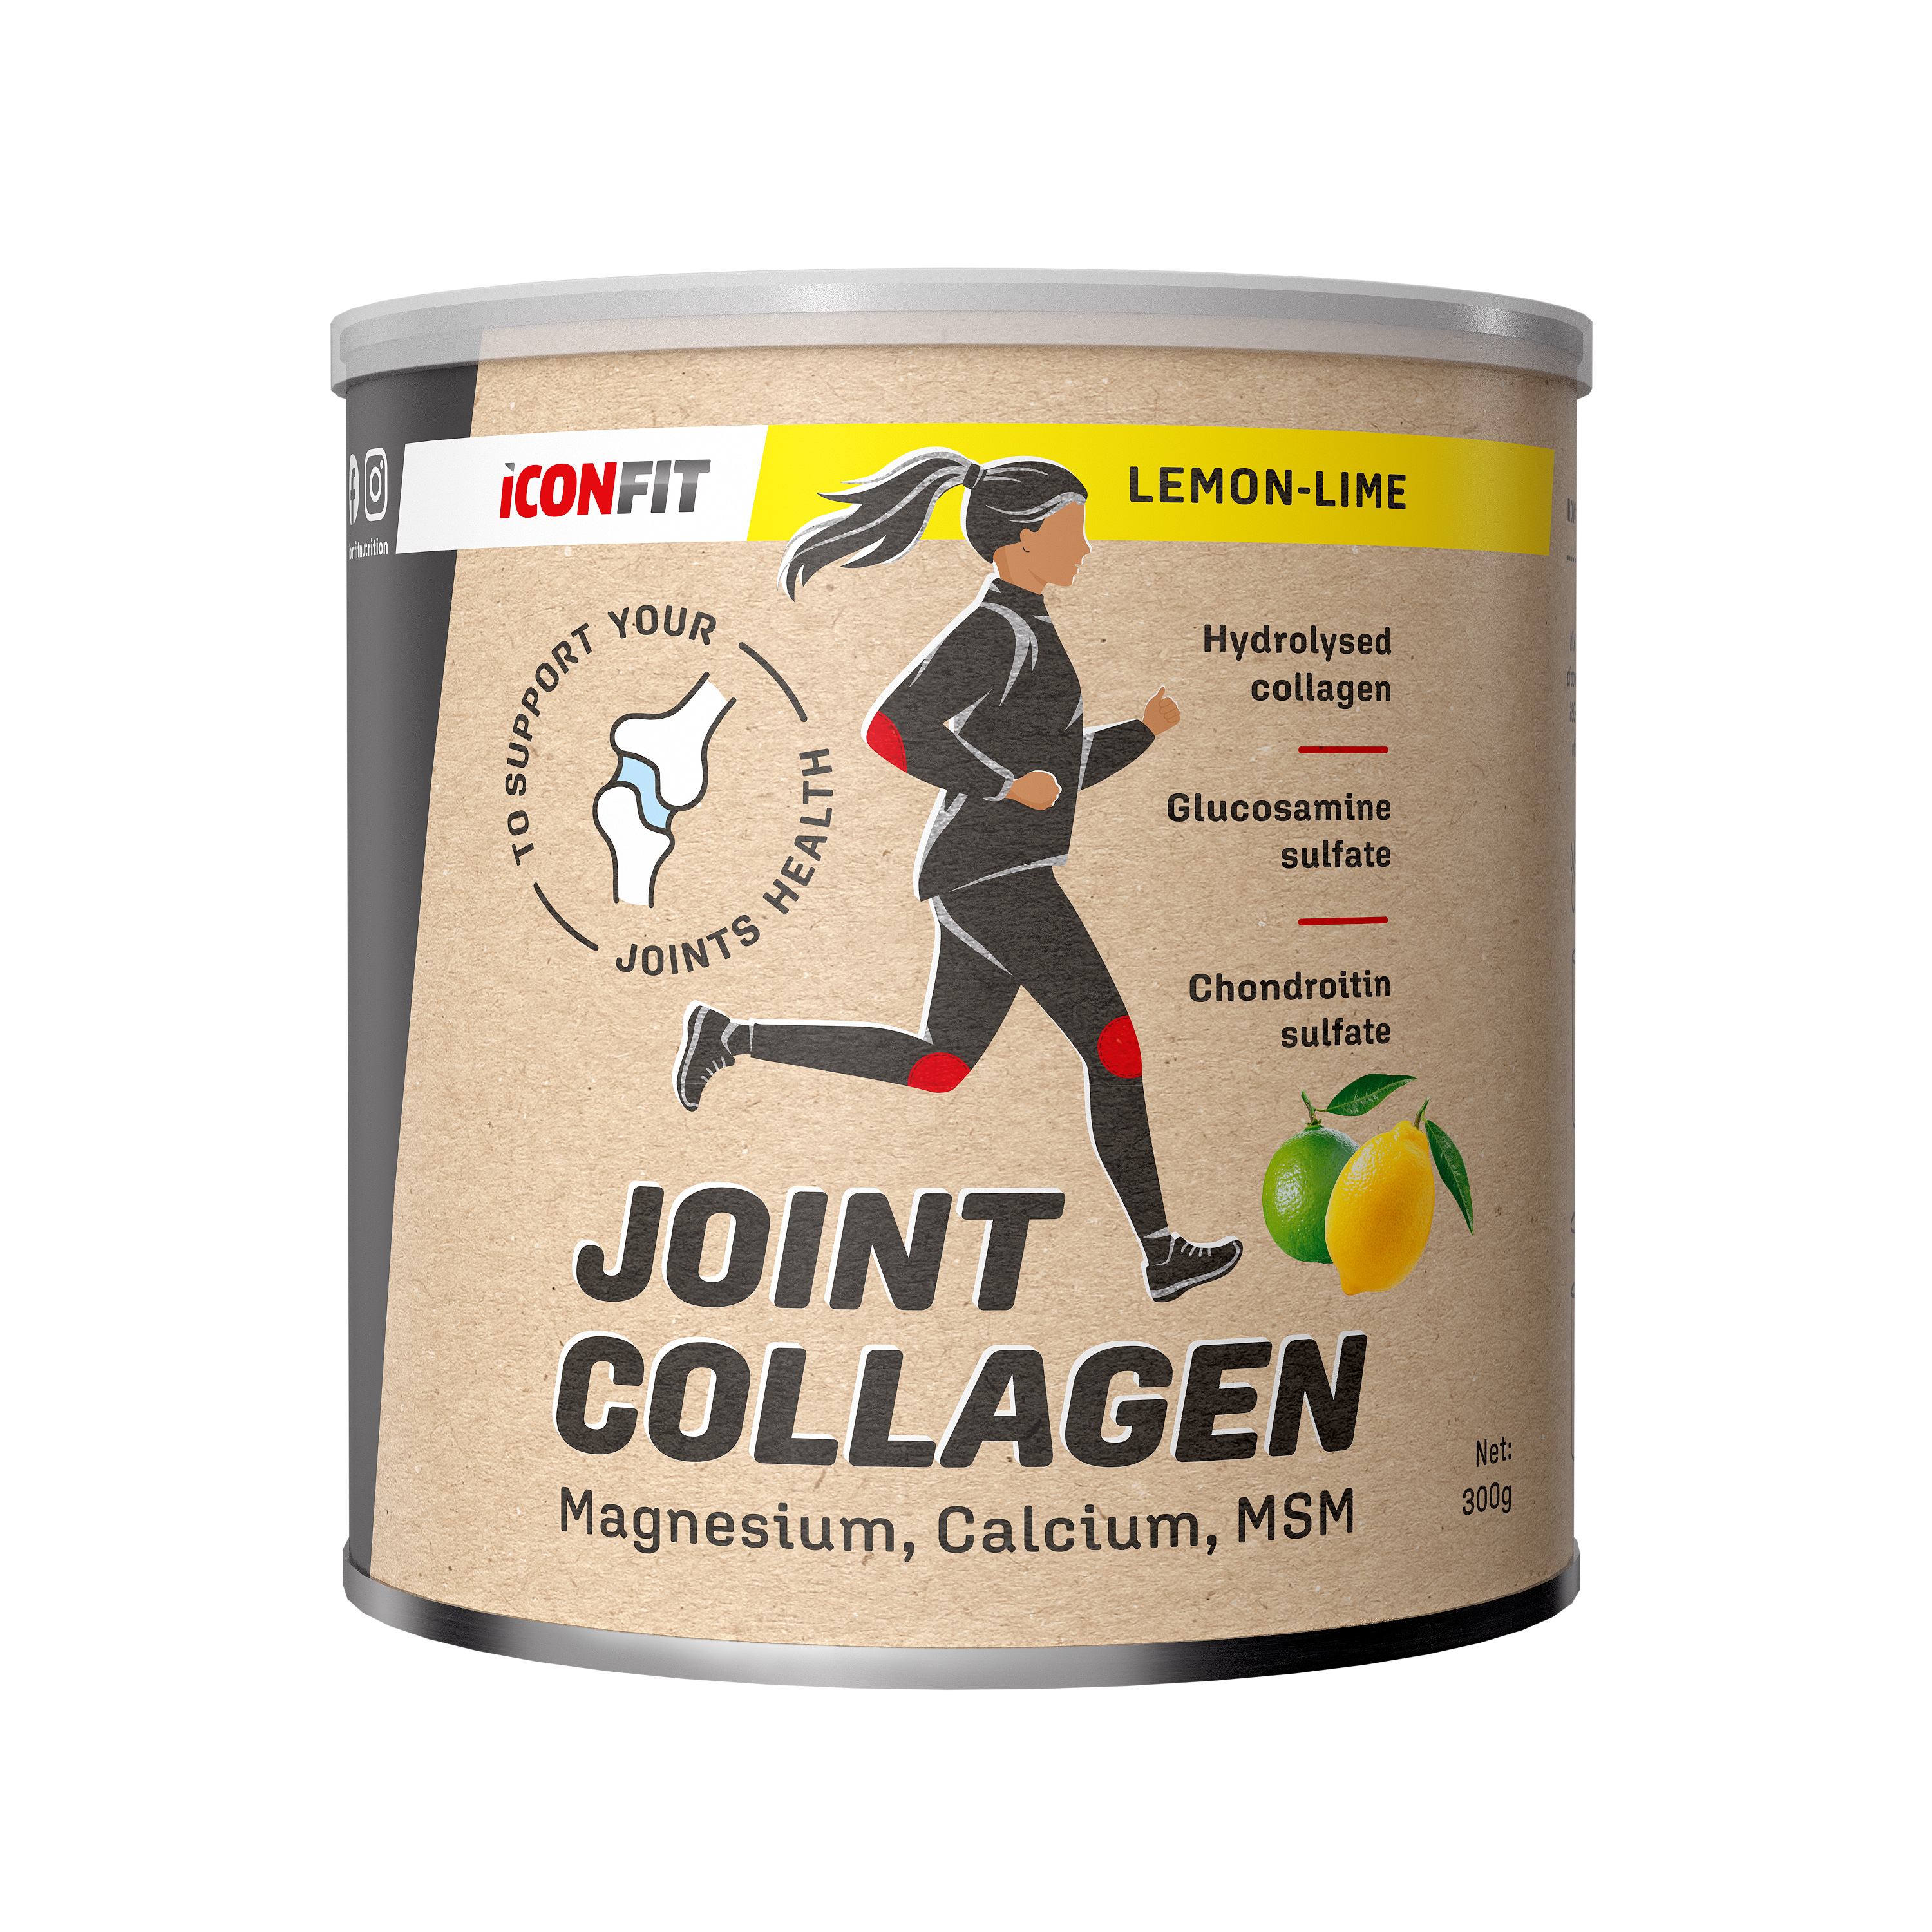 ICONFIT-Joint-Collagen-Lemon-Lime-300g